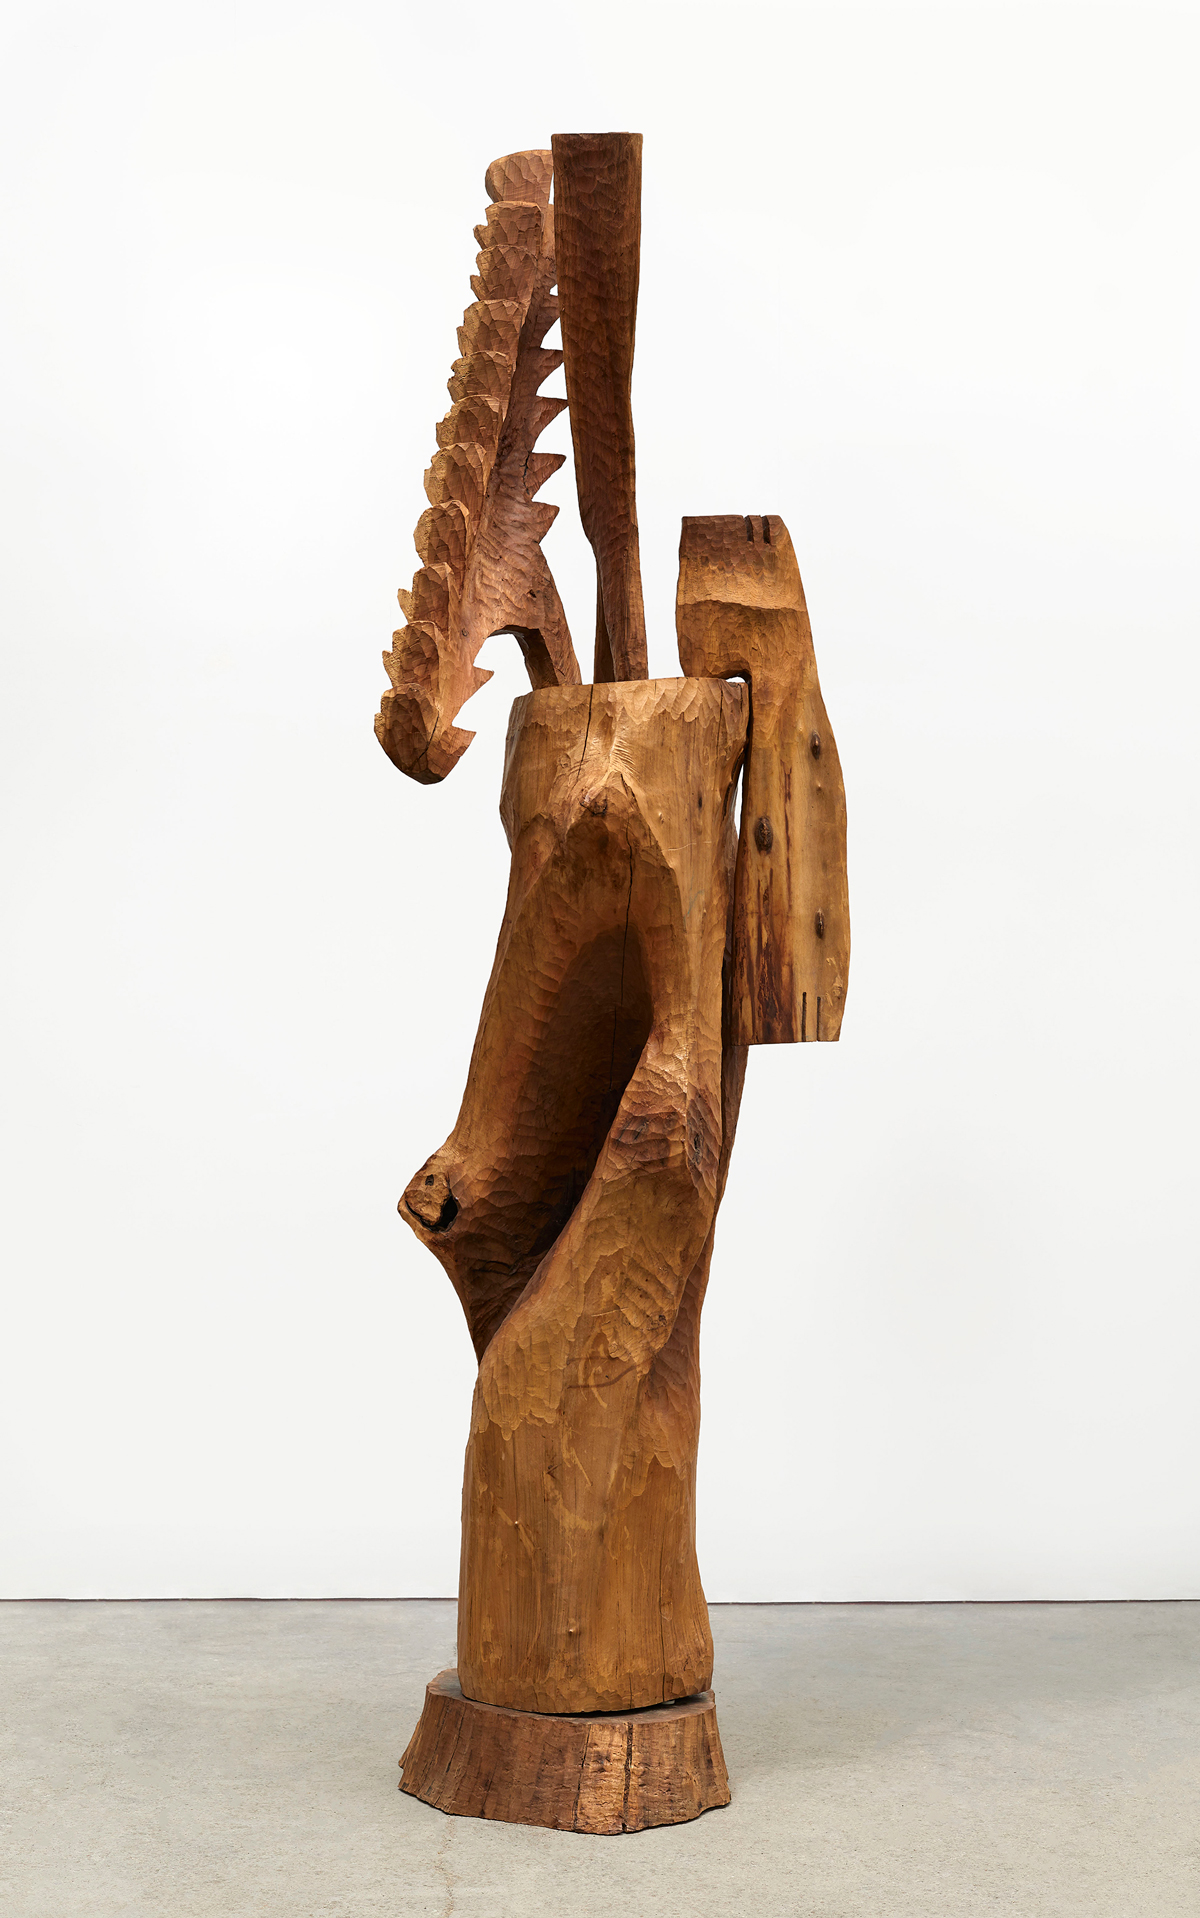 An abstract wooden sculpture.